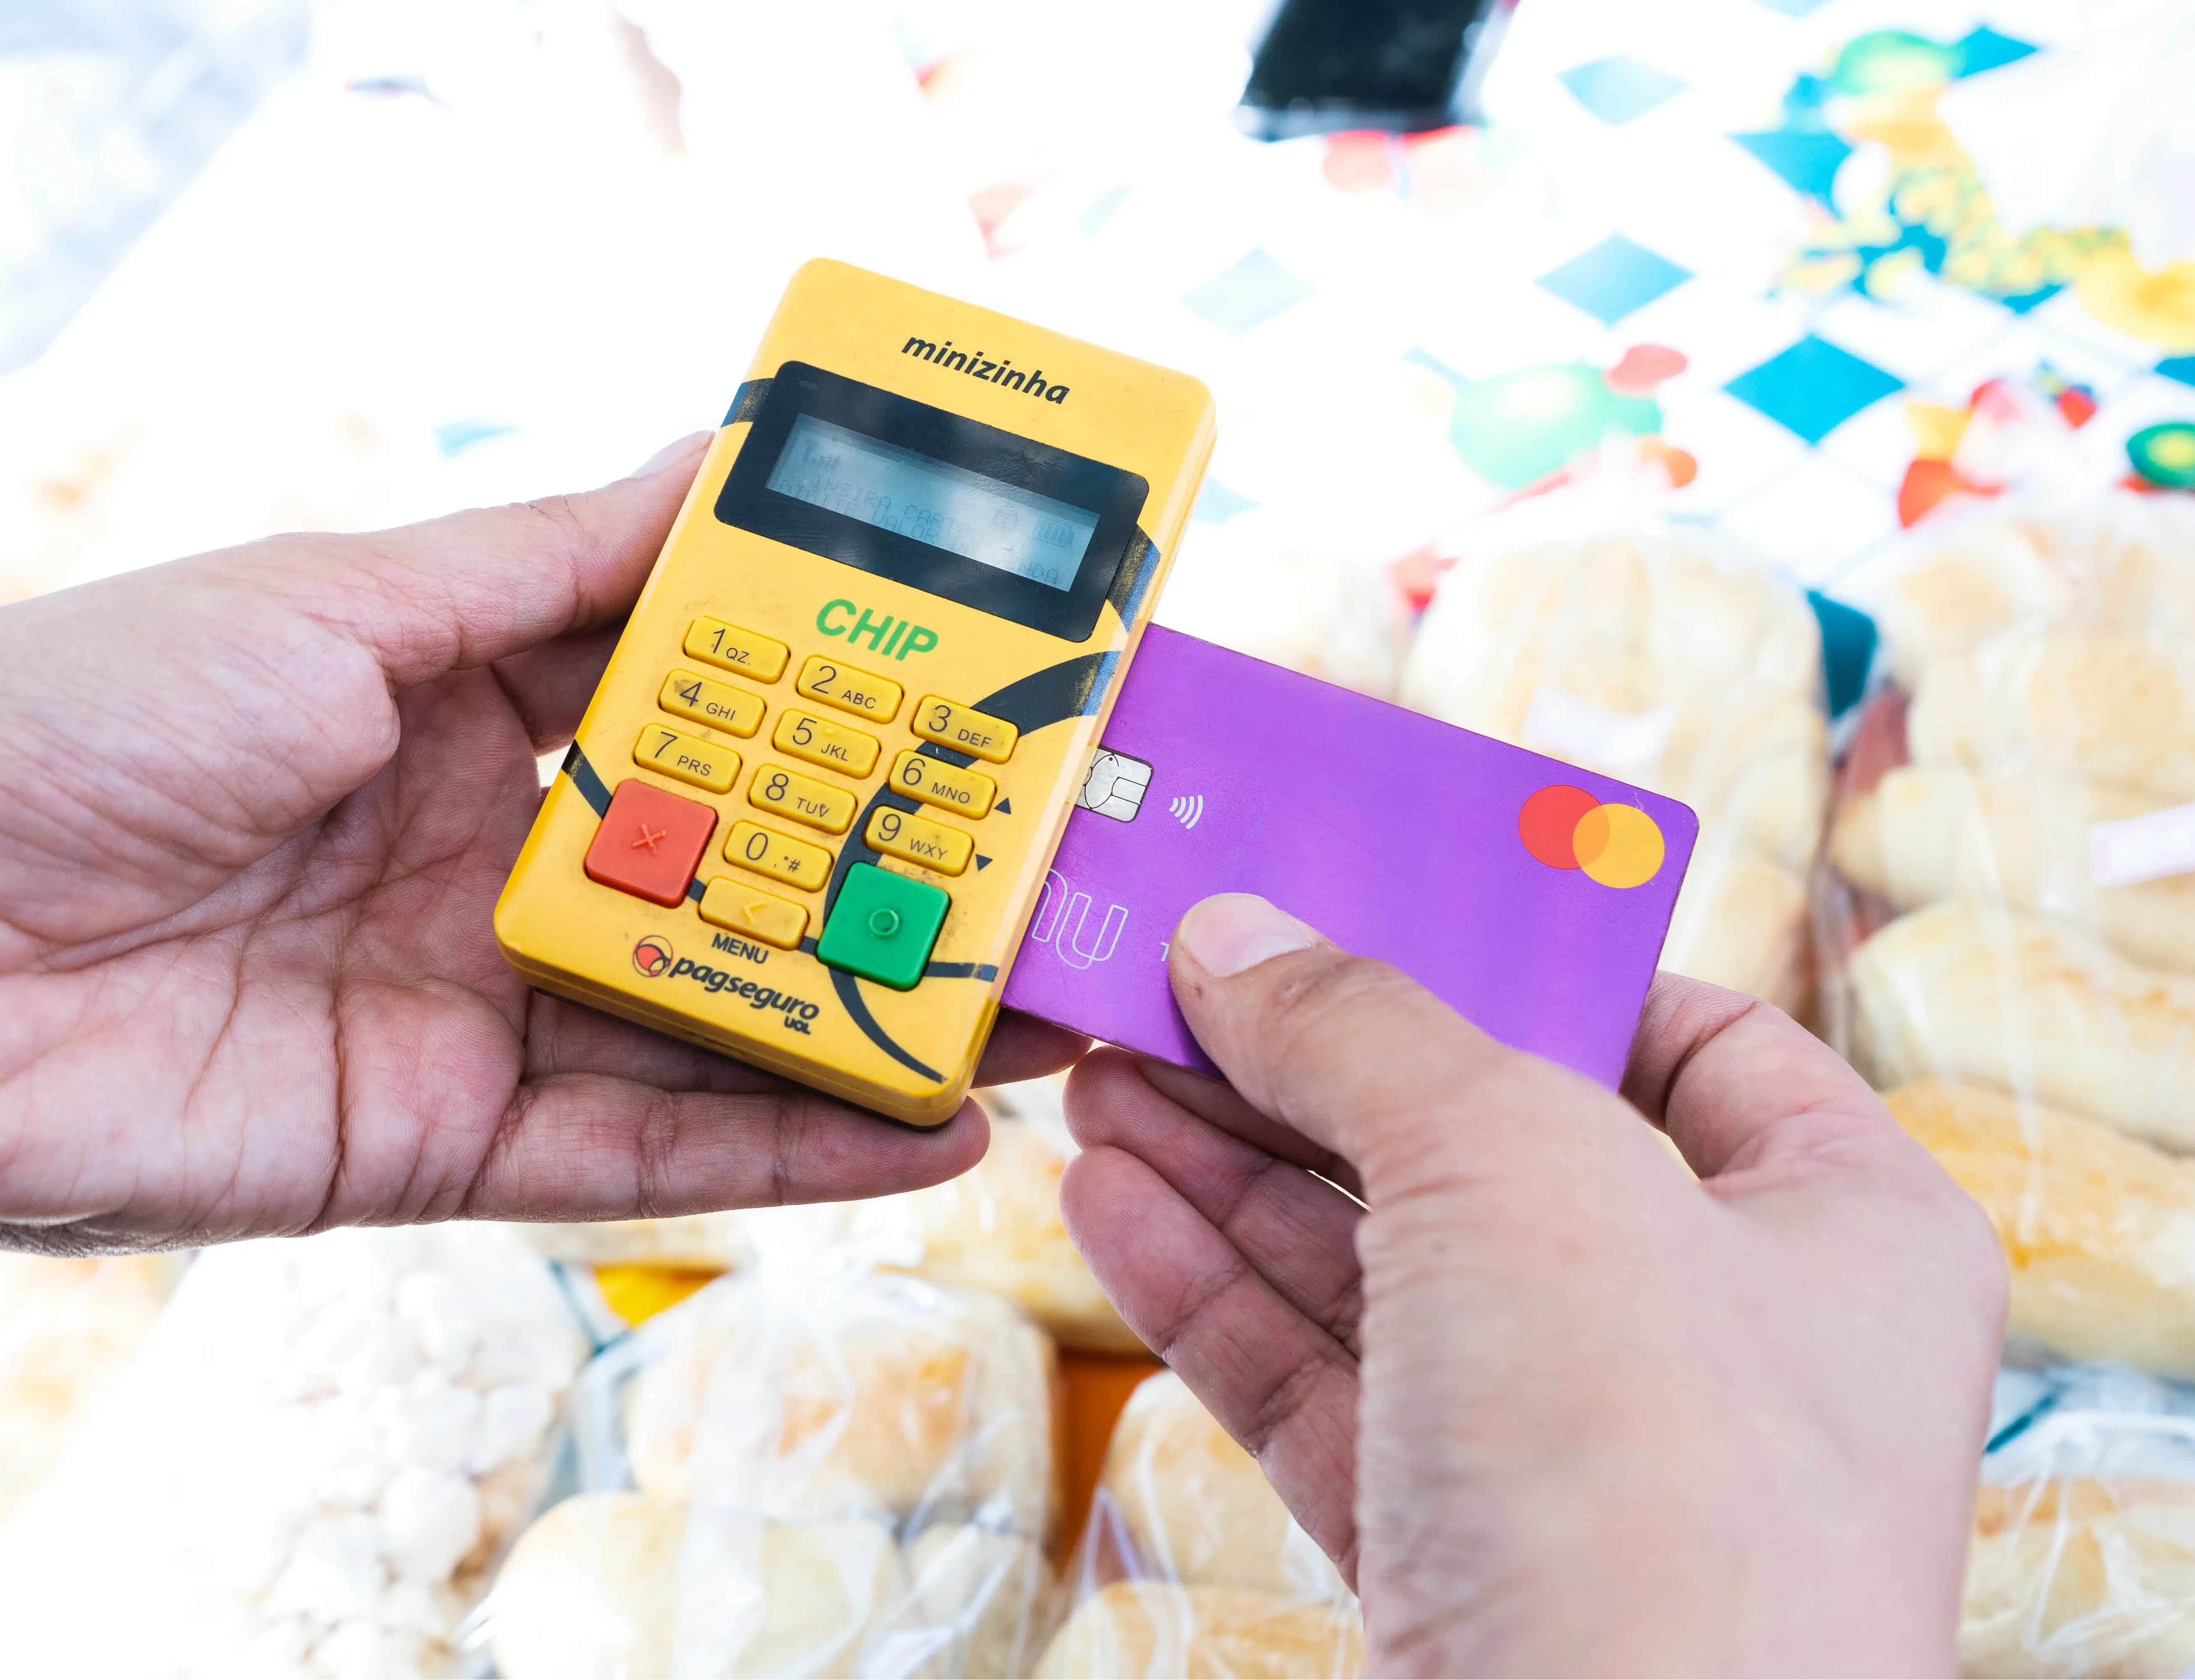 Minizinha Chip di PagSeguro è un lettore di carte compatto di colore giallo, con dettagli neri